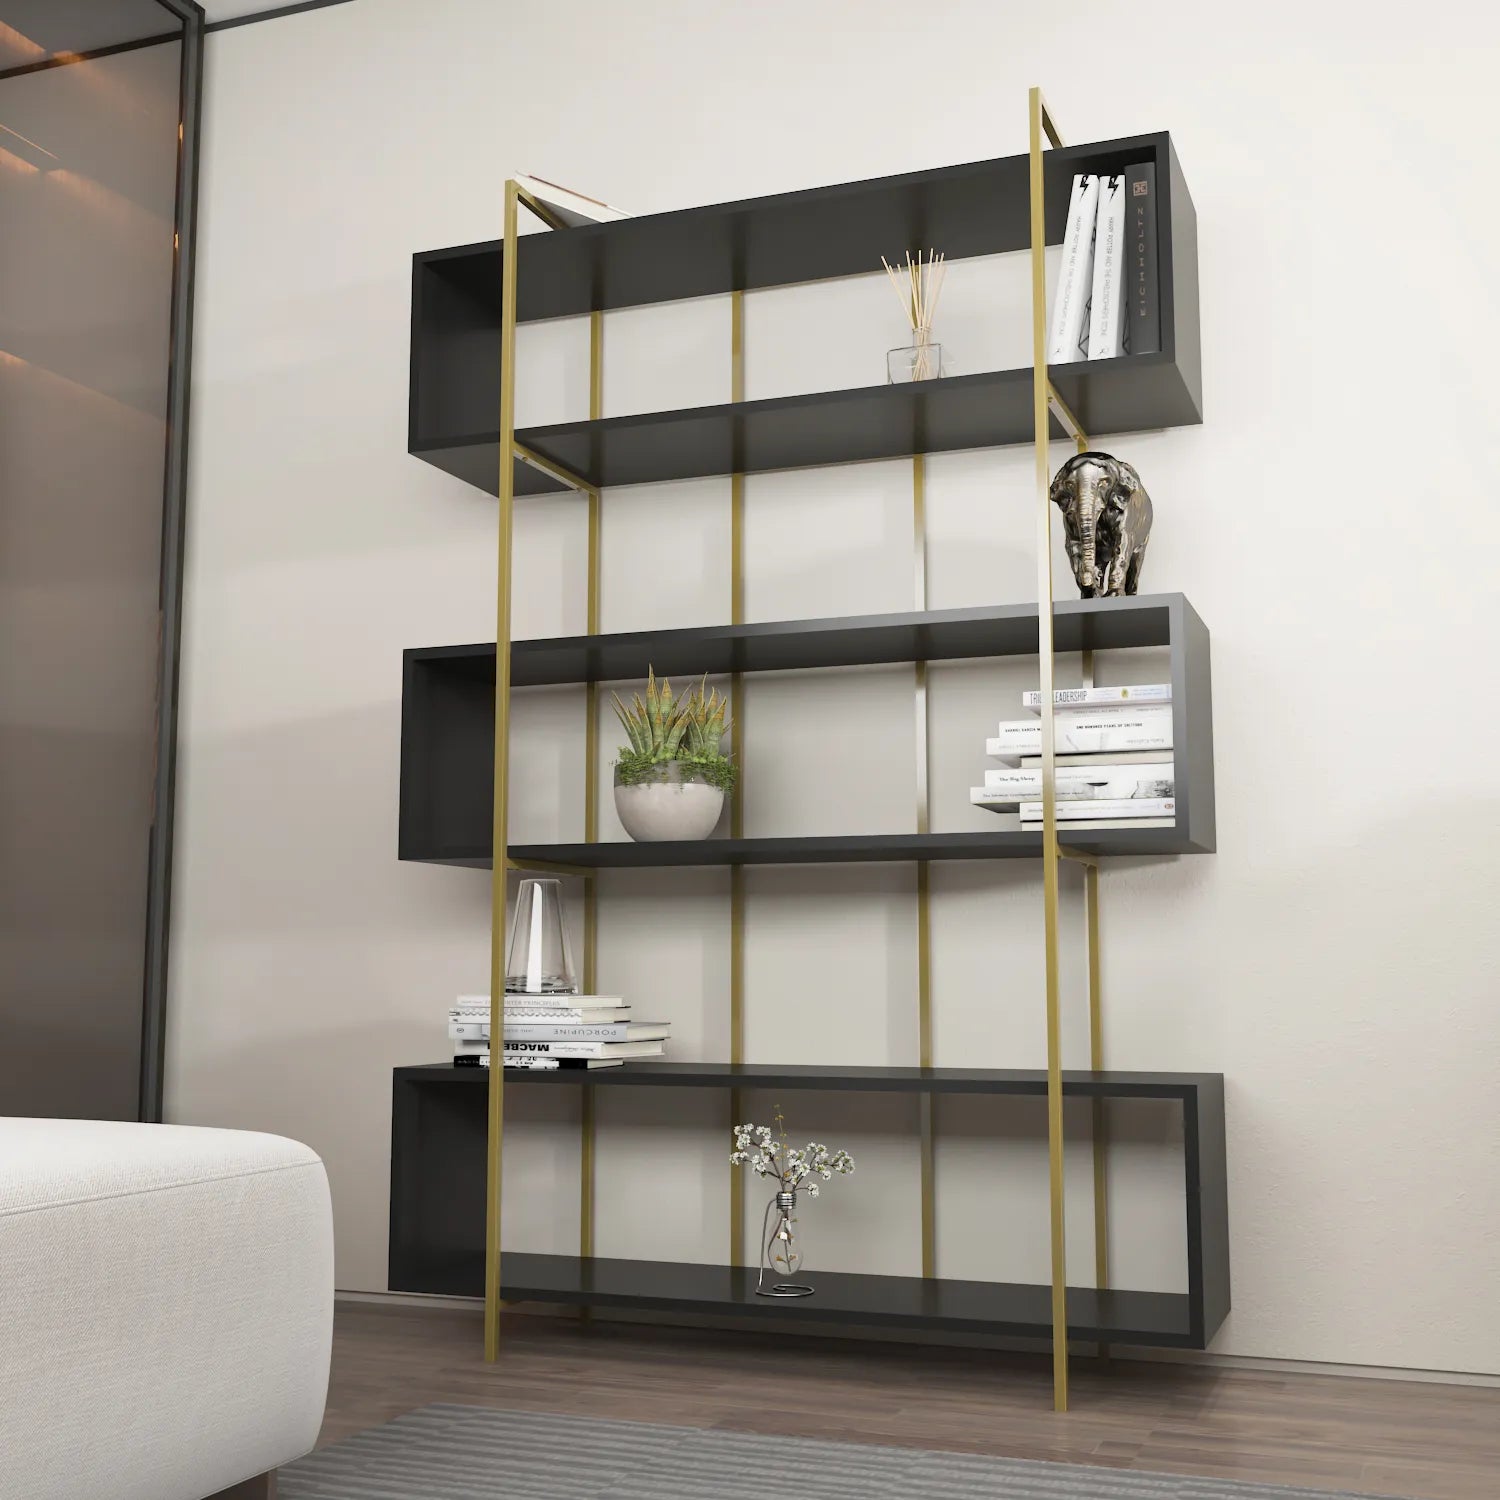 Bruti 71" Tall Geometric Metal Wood Bookcase | Bookshelf | Display Unit